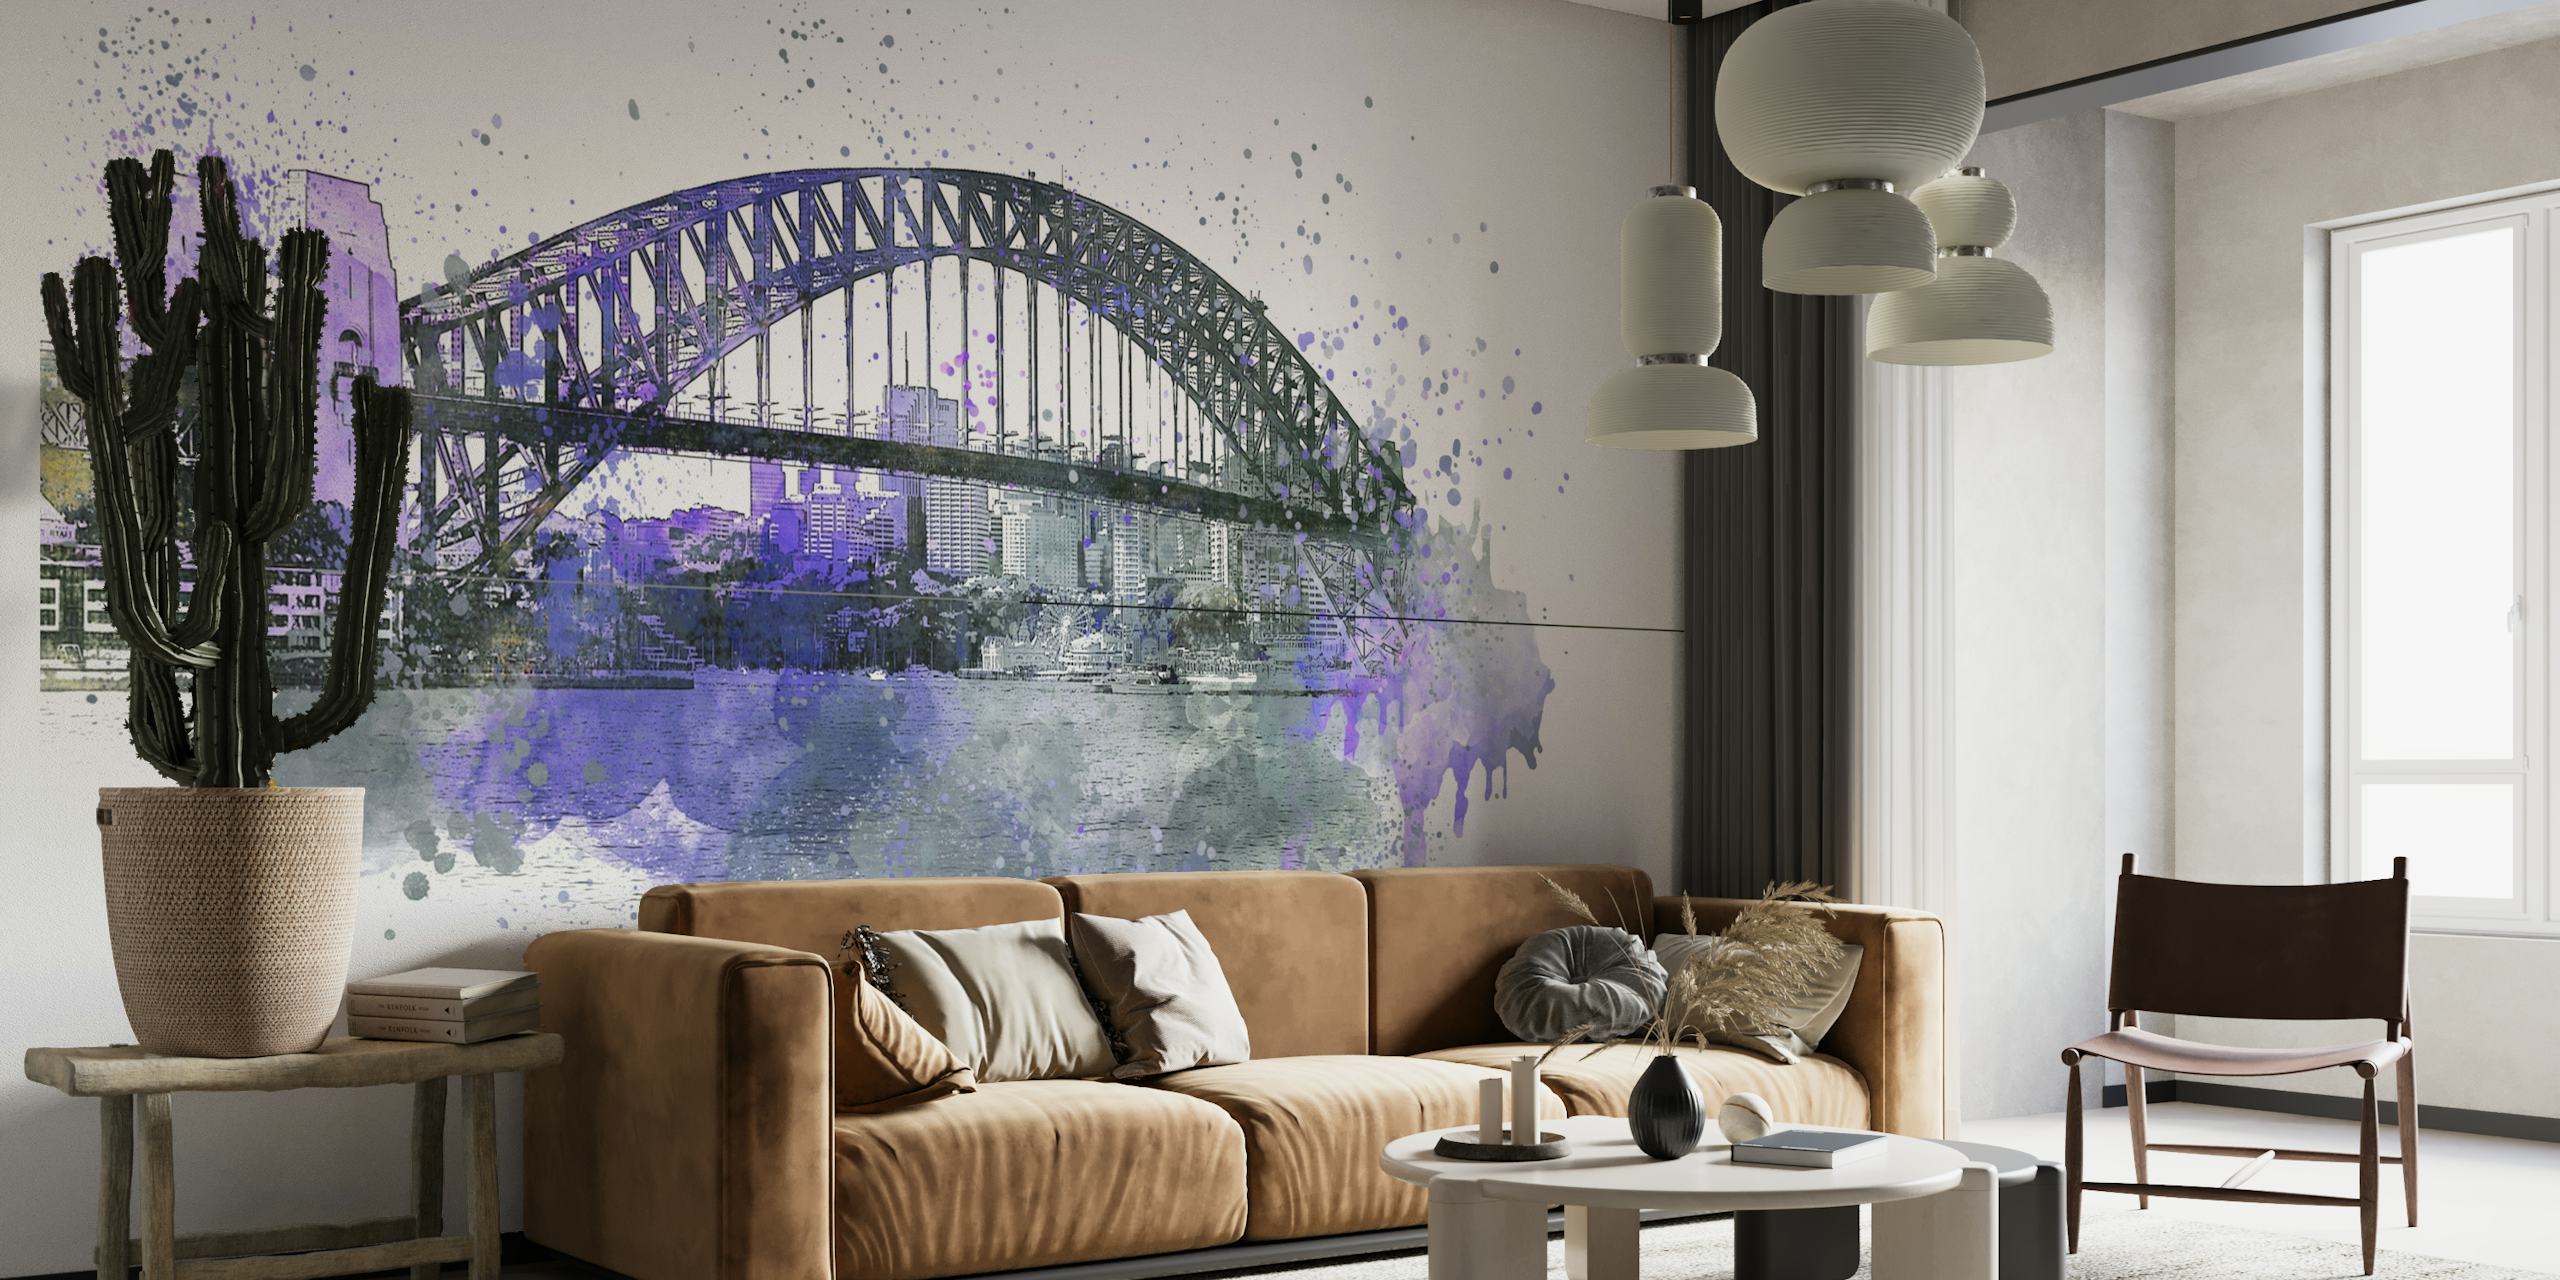 Umjetnički mural u akvarelu koji prikazuje Sydney Harbour Bridge u ljubičastim i sivim tonovima